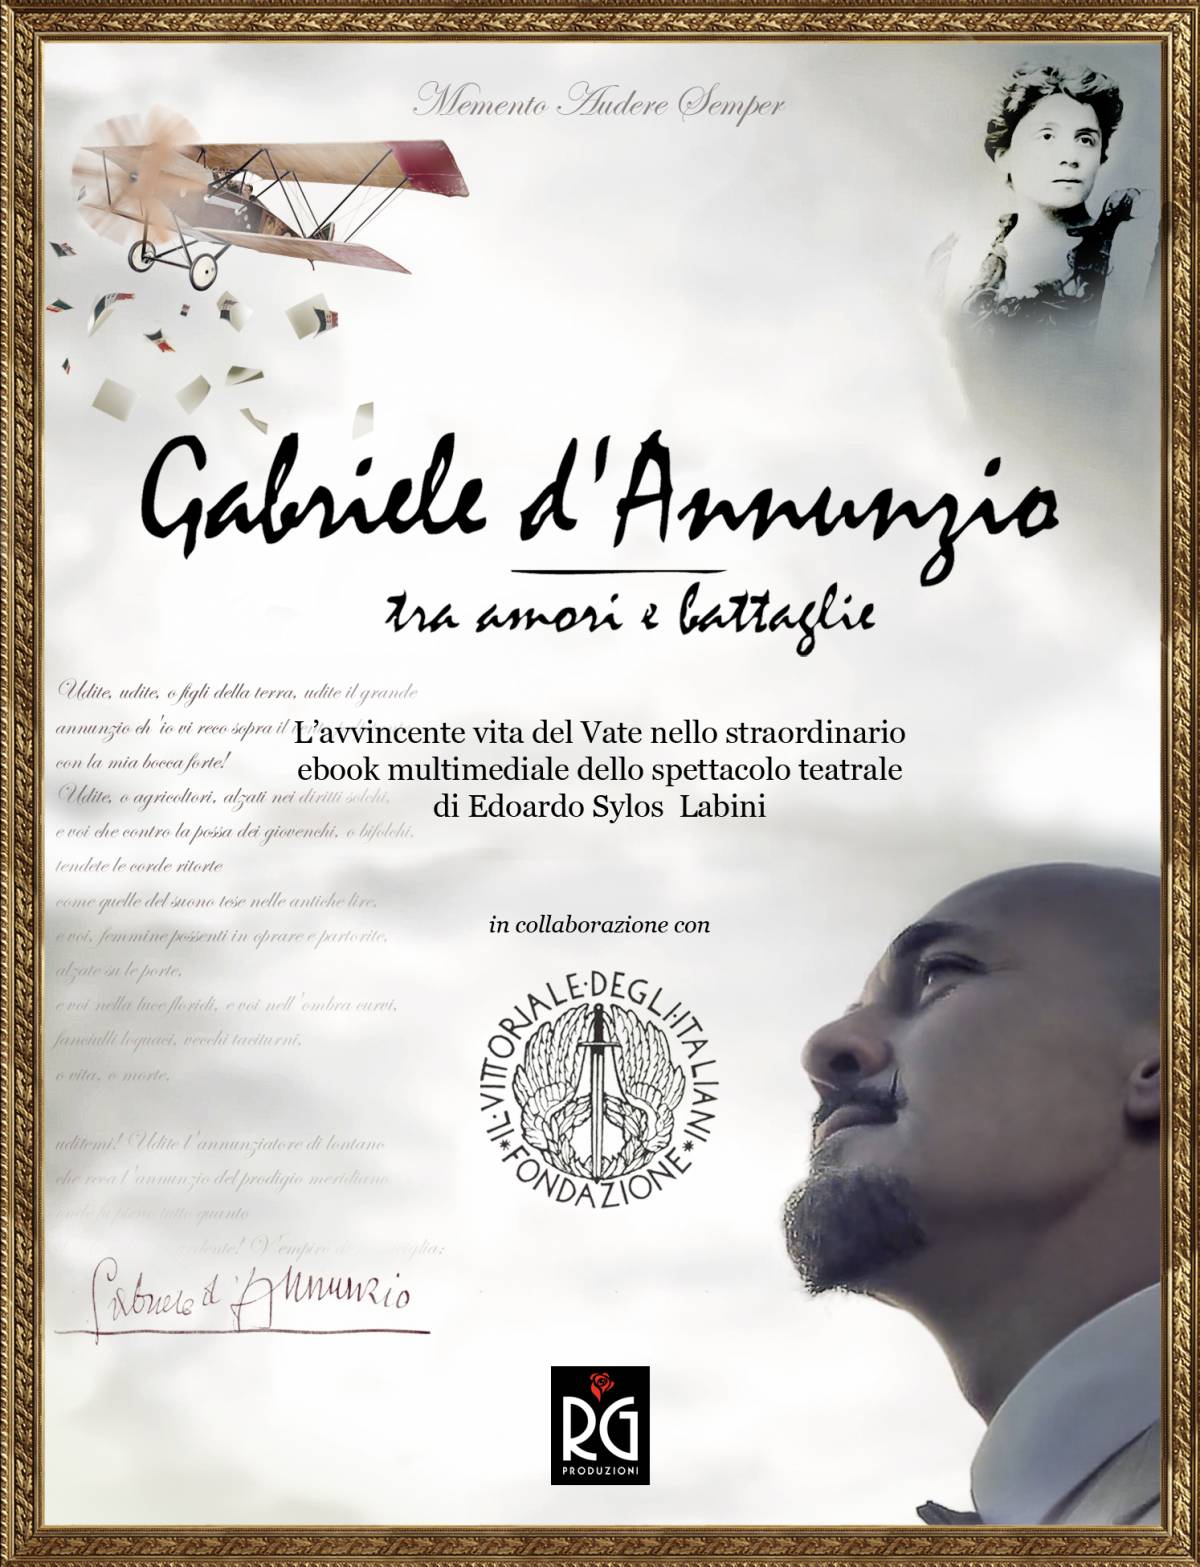 Avventure, passioni, tragedie di Gabriele D'Annunzio da oggi in ebook  